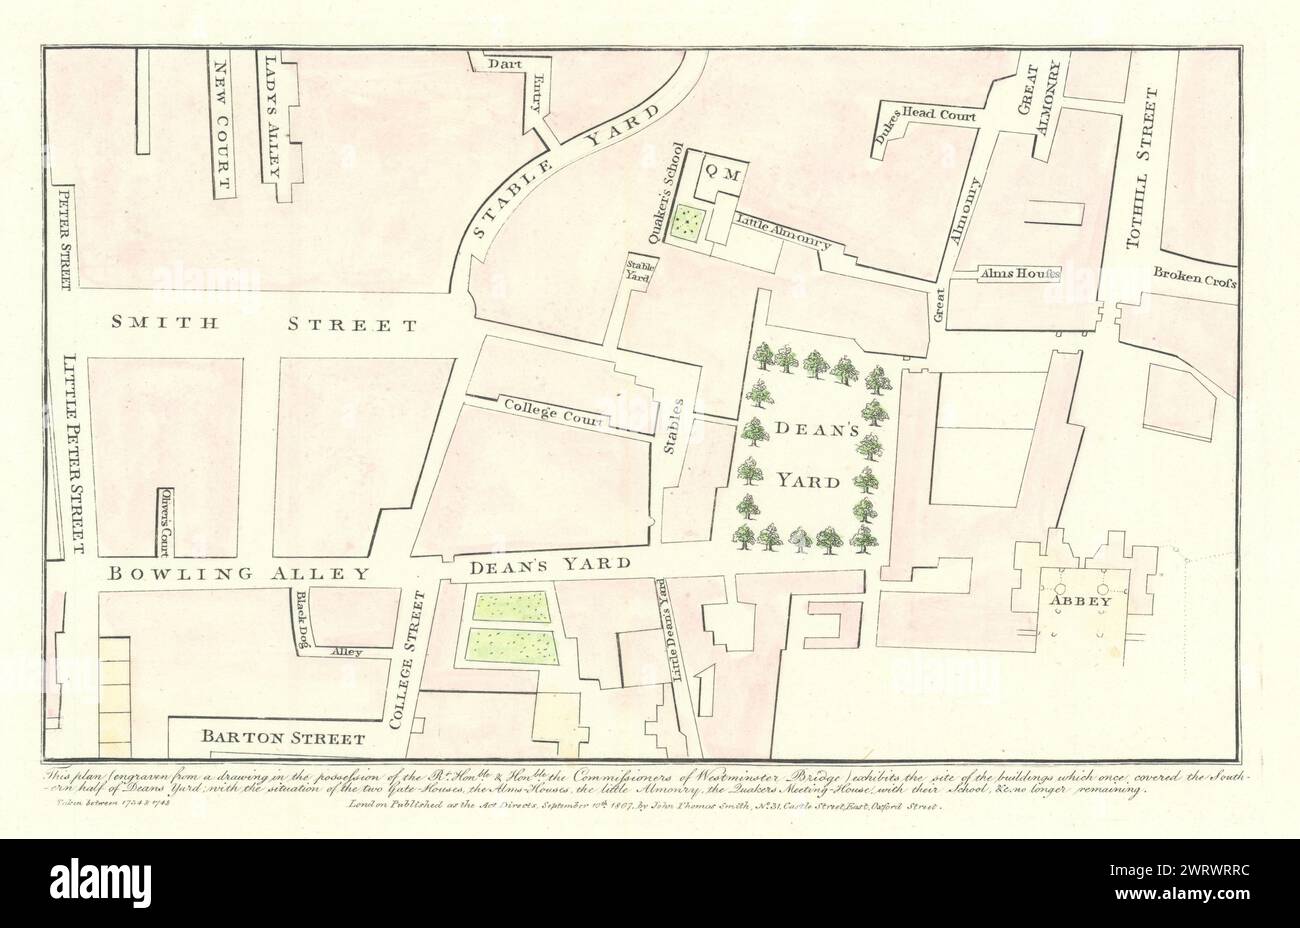 Plan of Dean's Yard, Smith Street e Westminster Abbey, 1734. J.T. SMITH mappa del 1807 Foto Stock